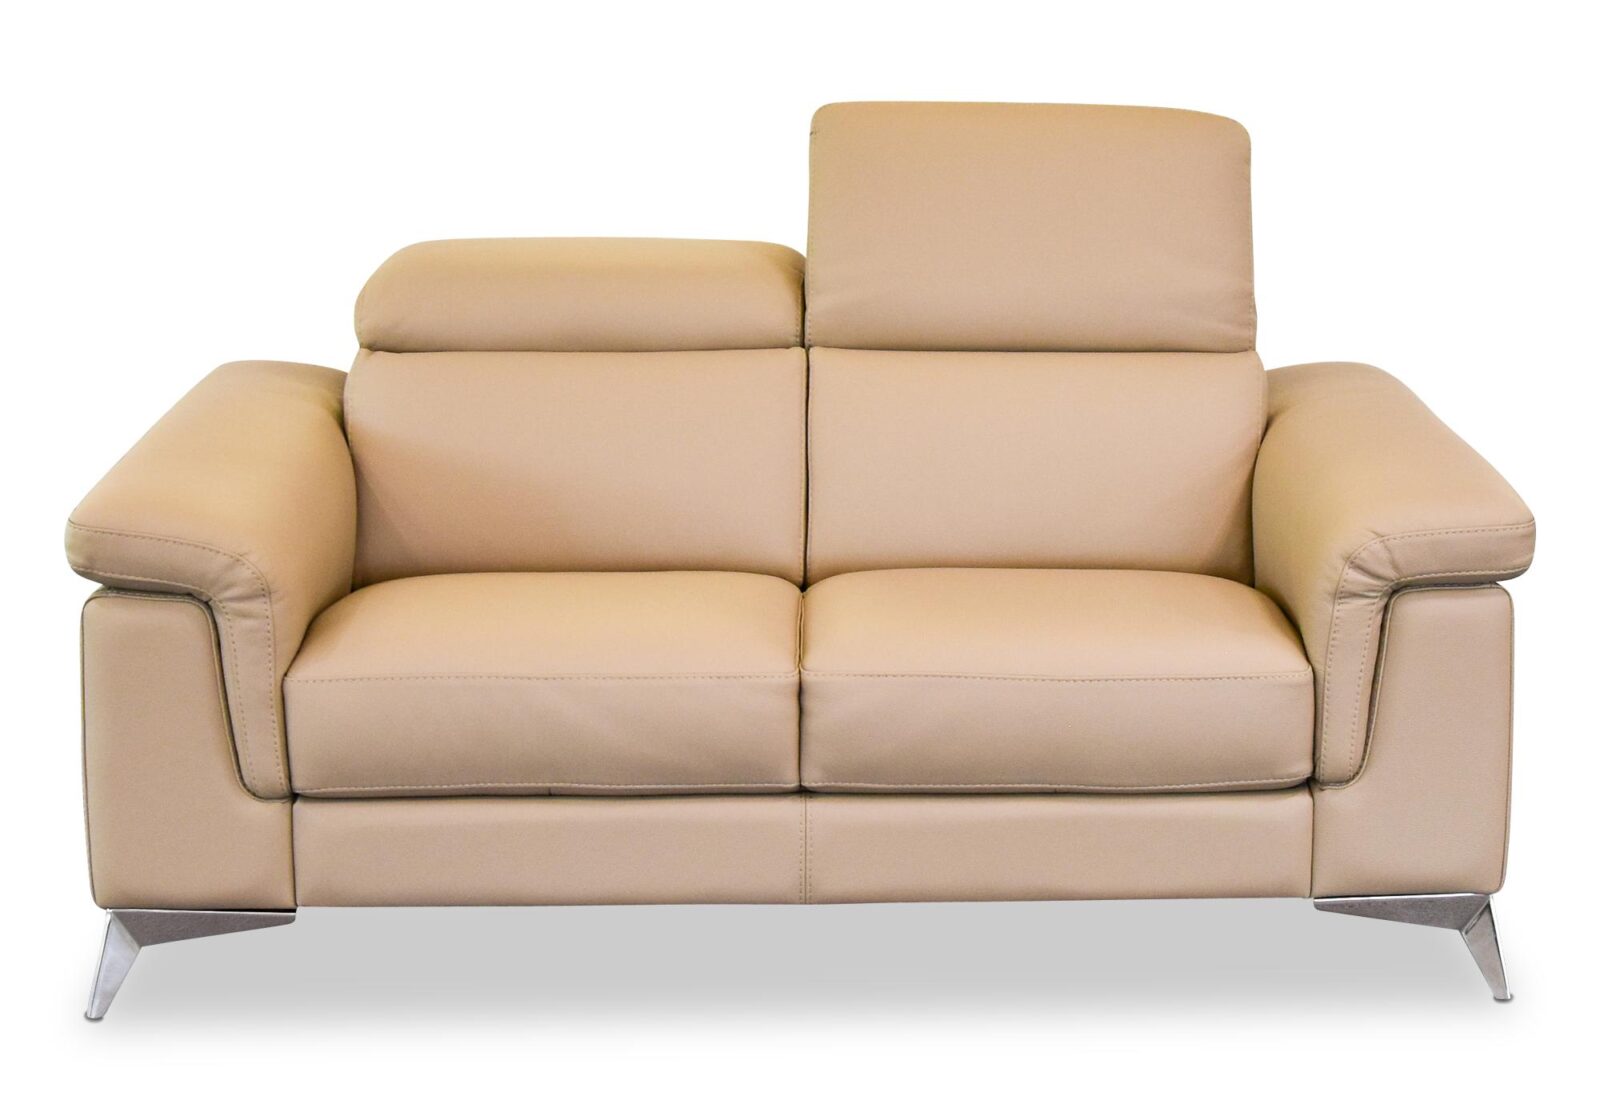 2er Sofa Ever mit verstellbarem Kopfteil. Bezug: Leder. Farbe: Biscotto. Erhältlich bei Möbel Gallati.